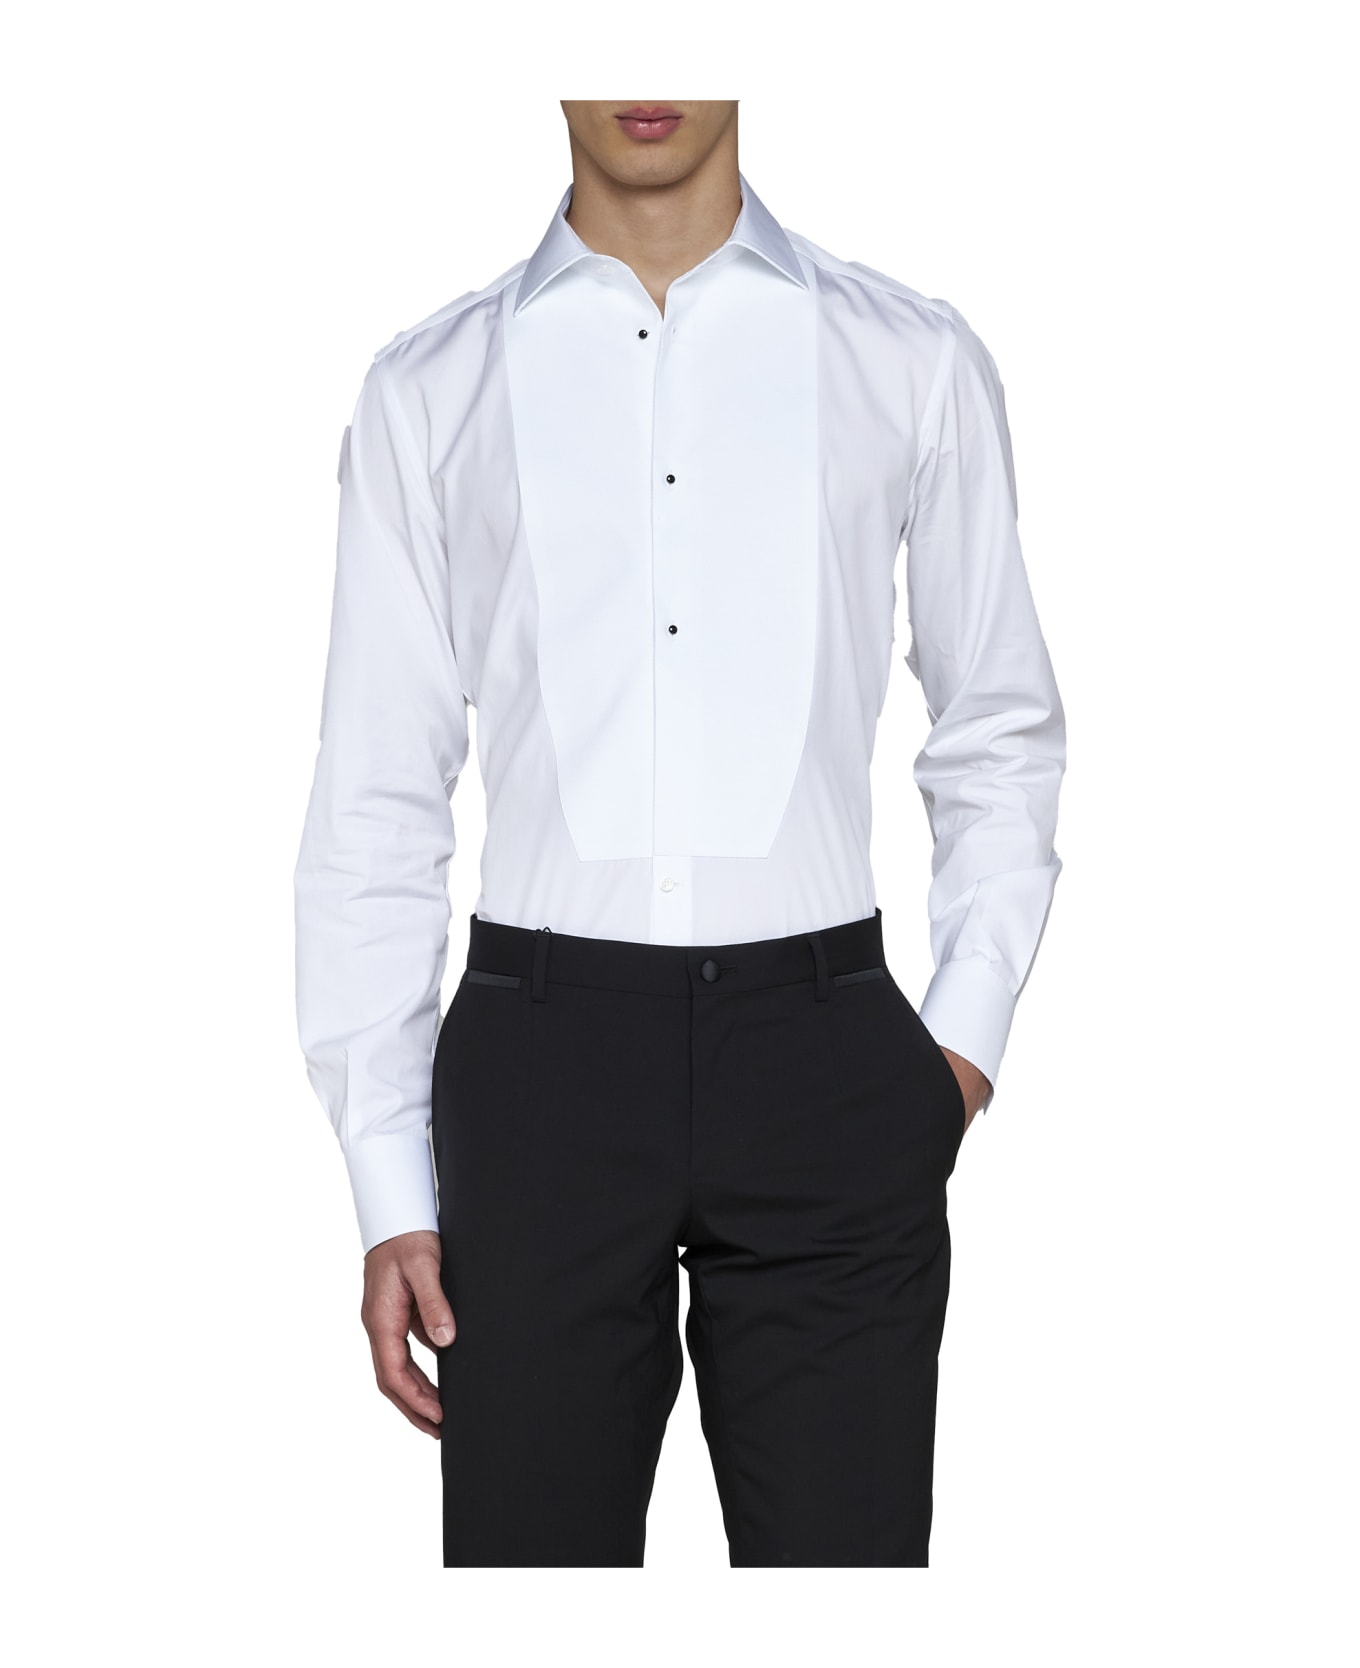 Dolce & Gabbana Shirt - Bianco ottico